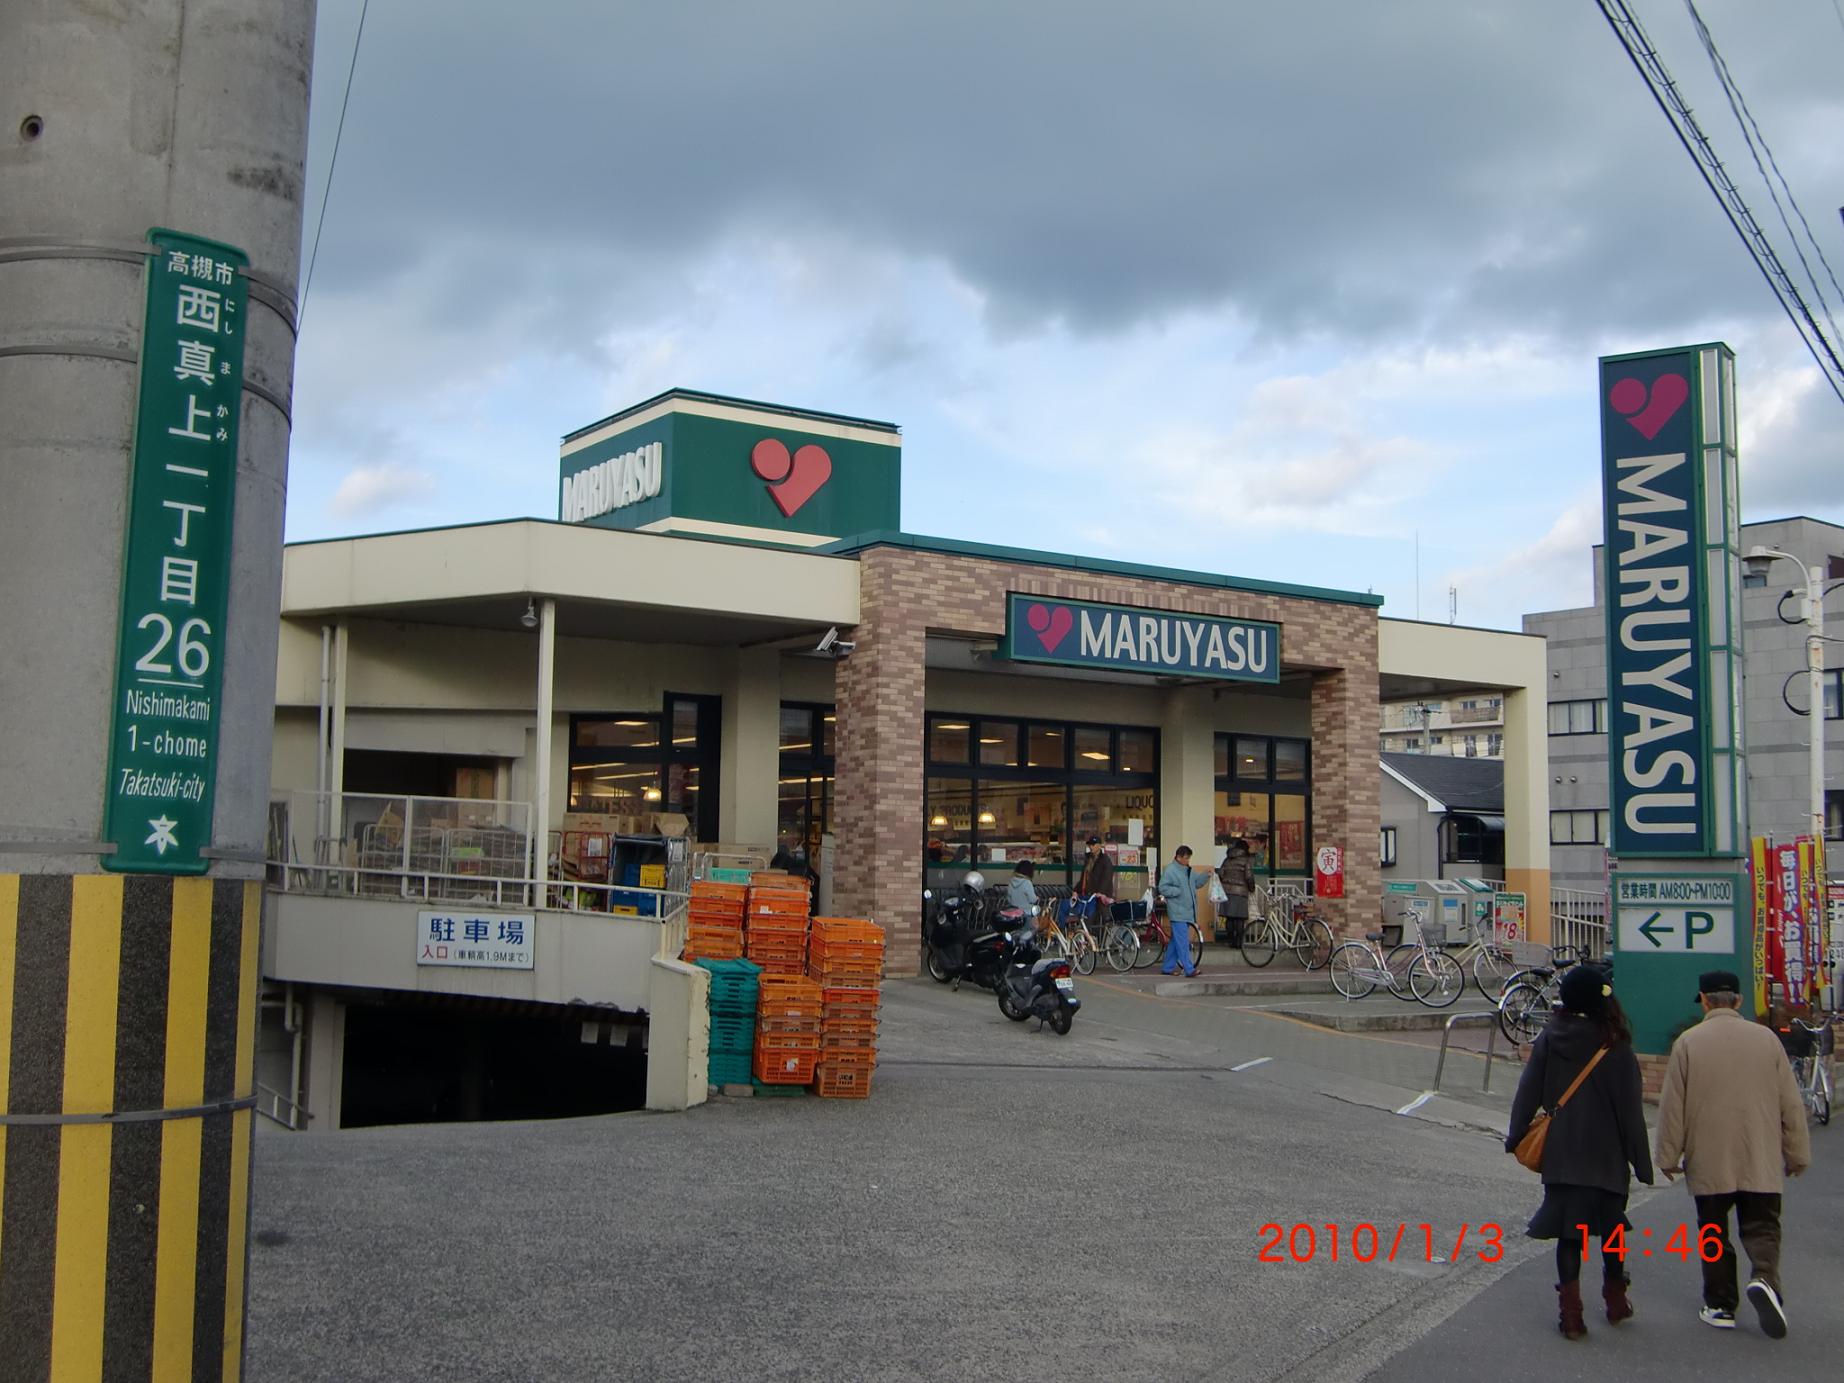 Supermarket. 443m to Super Maruyasu just above store (Super)